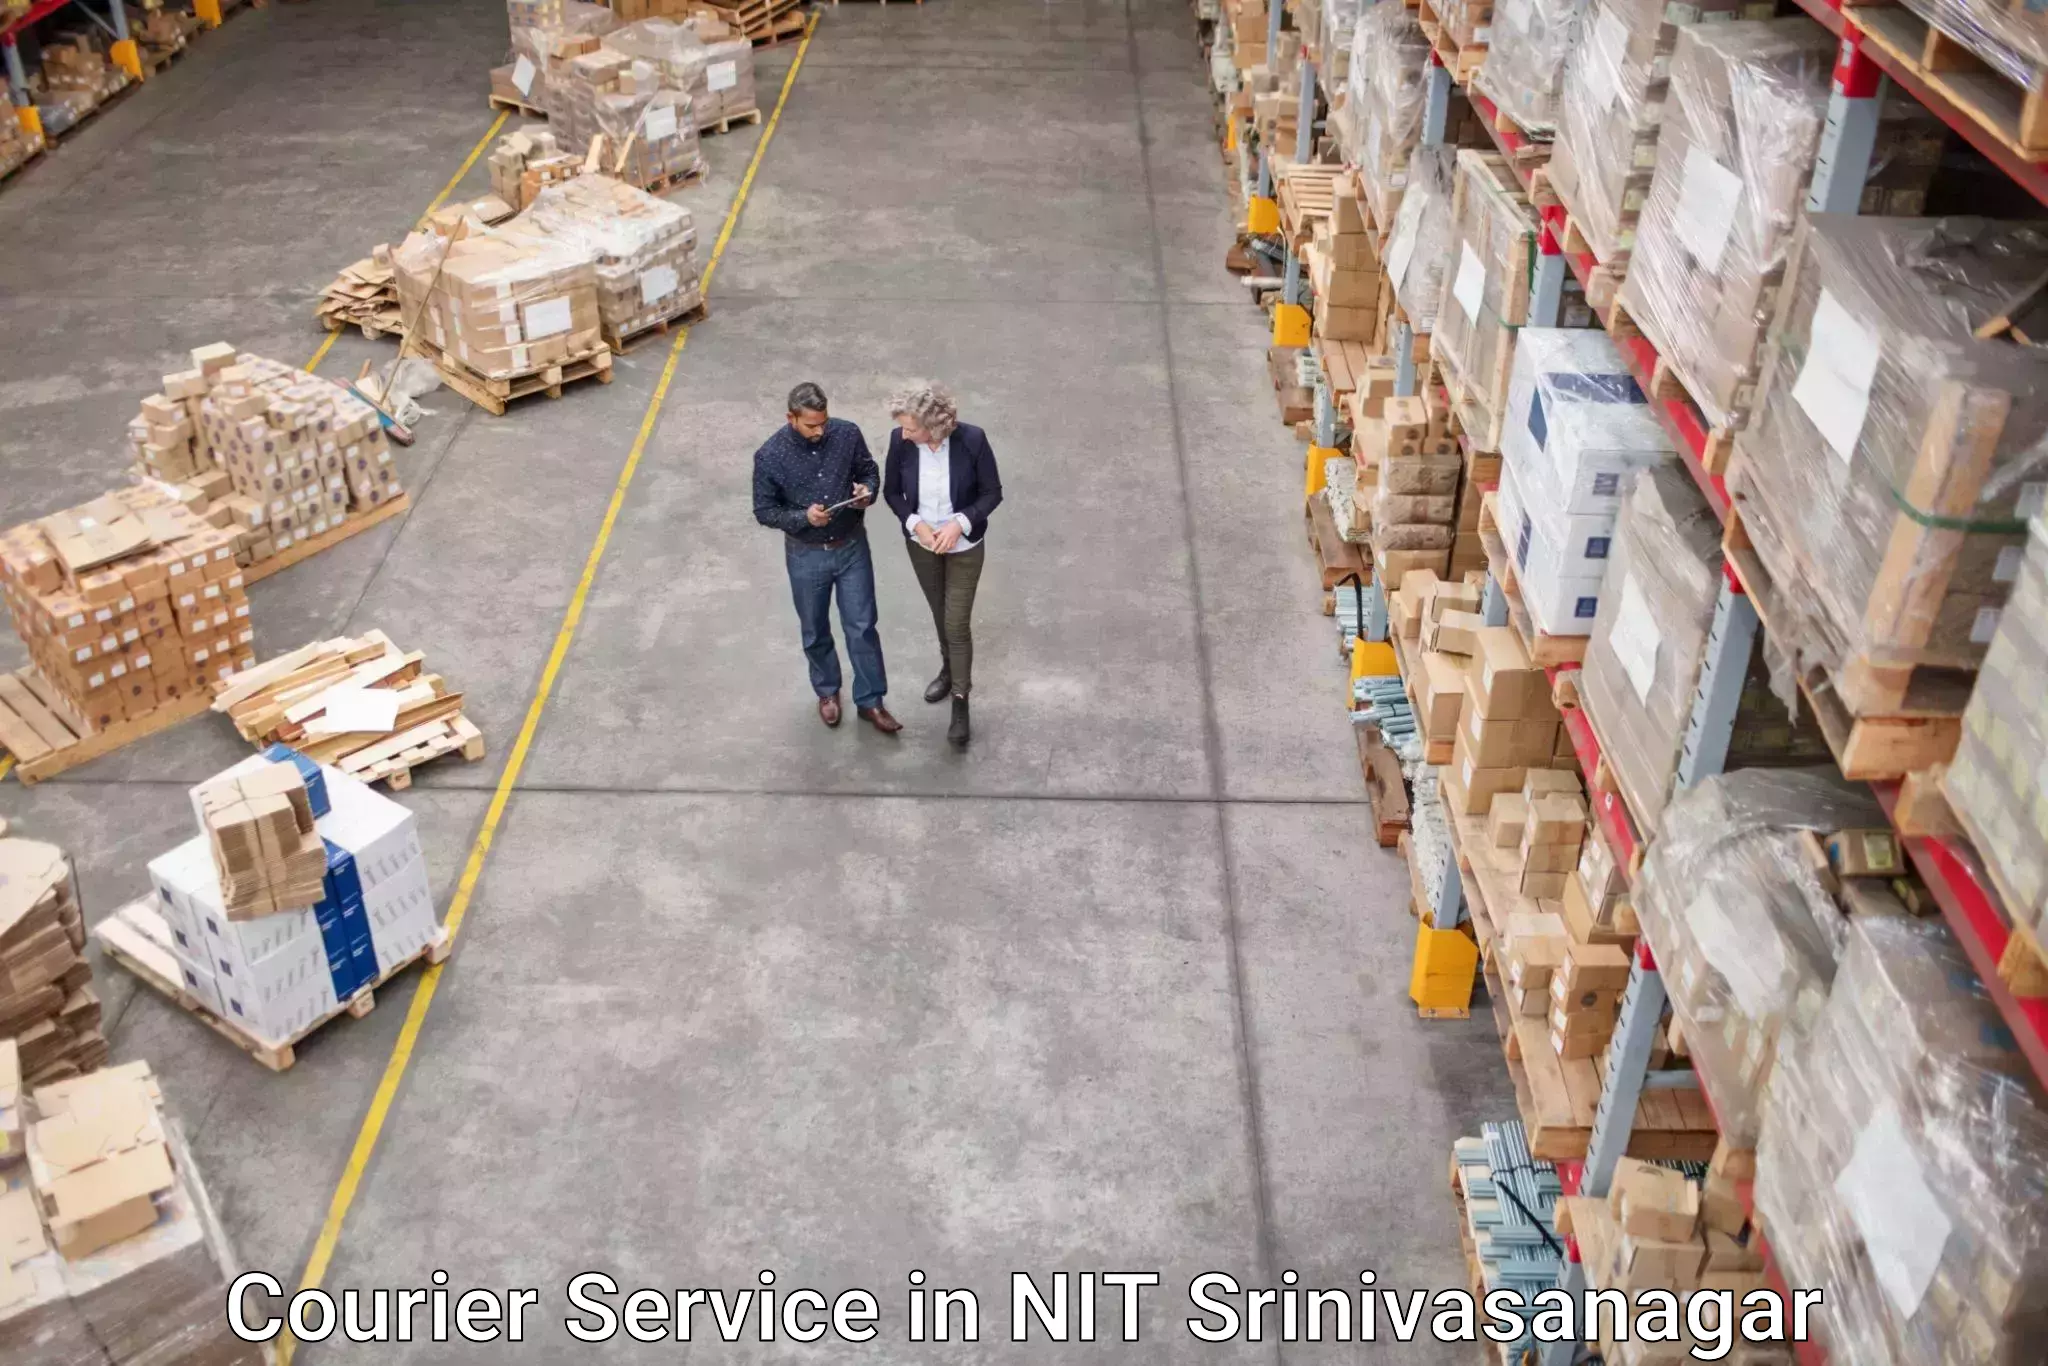 Seamless shipping service in NIT Srinivasanagar